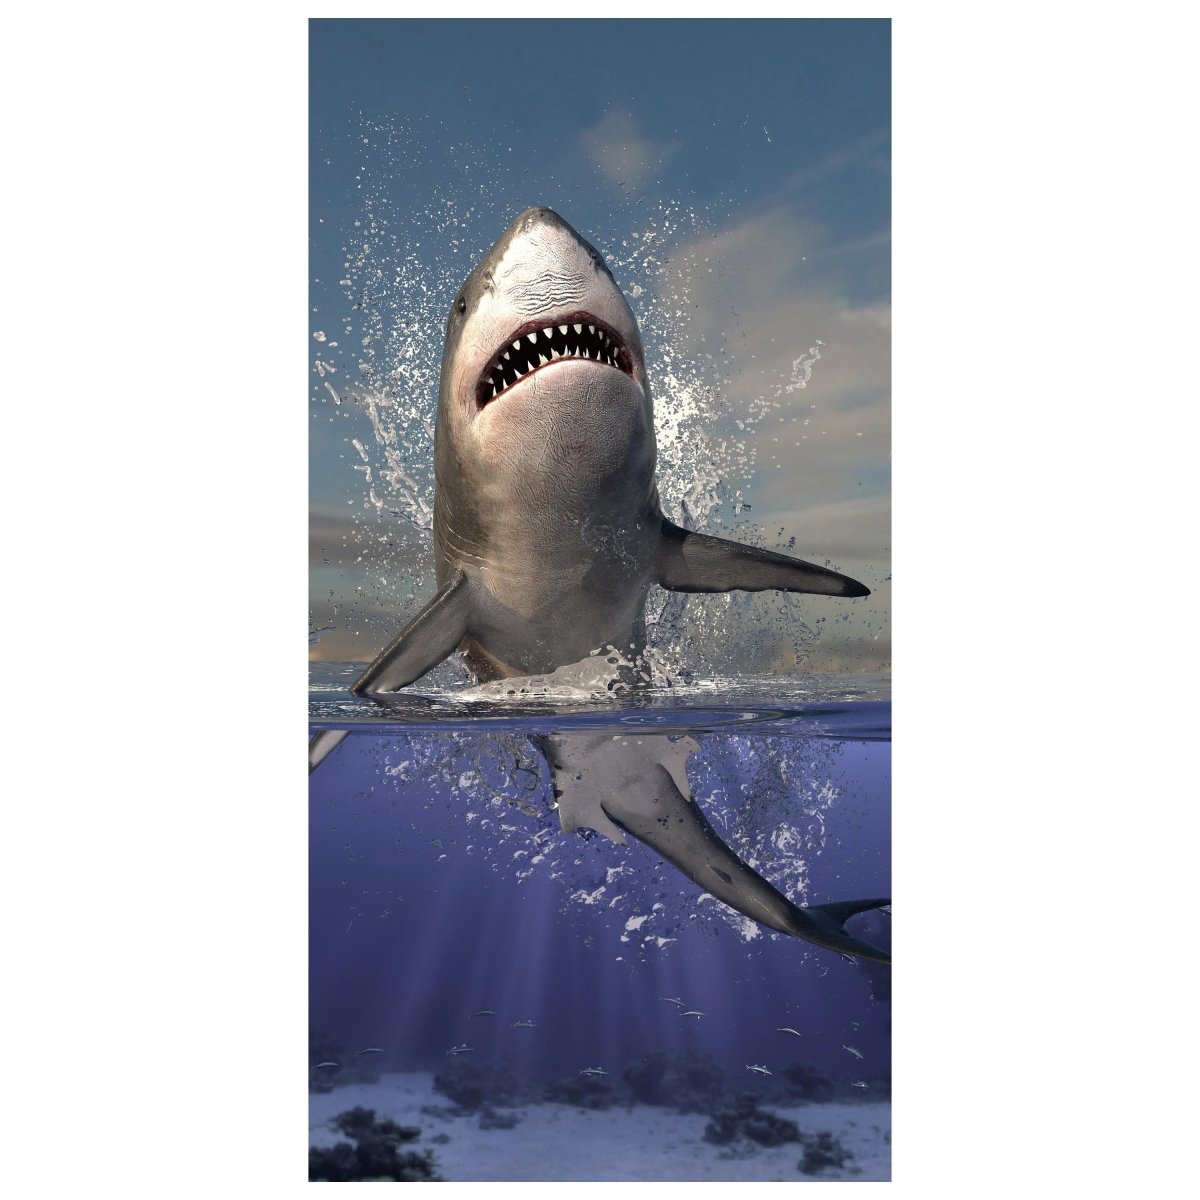 Türtapete springender Hai, Unter-wasser, Raub-tier M1130 - Bild 2